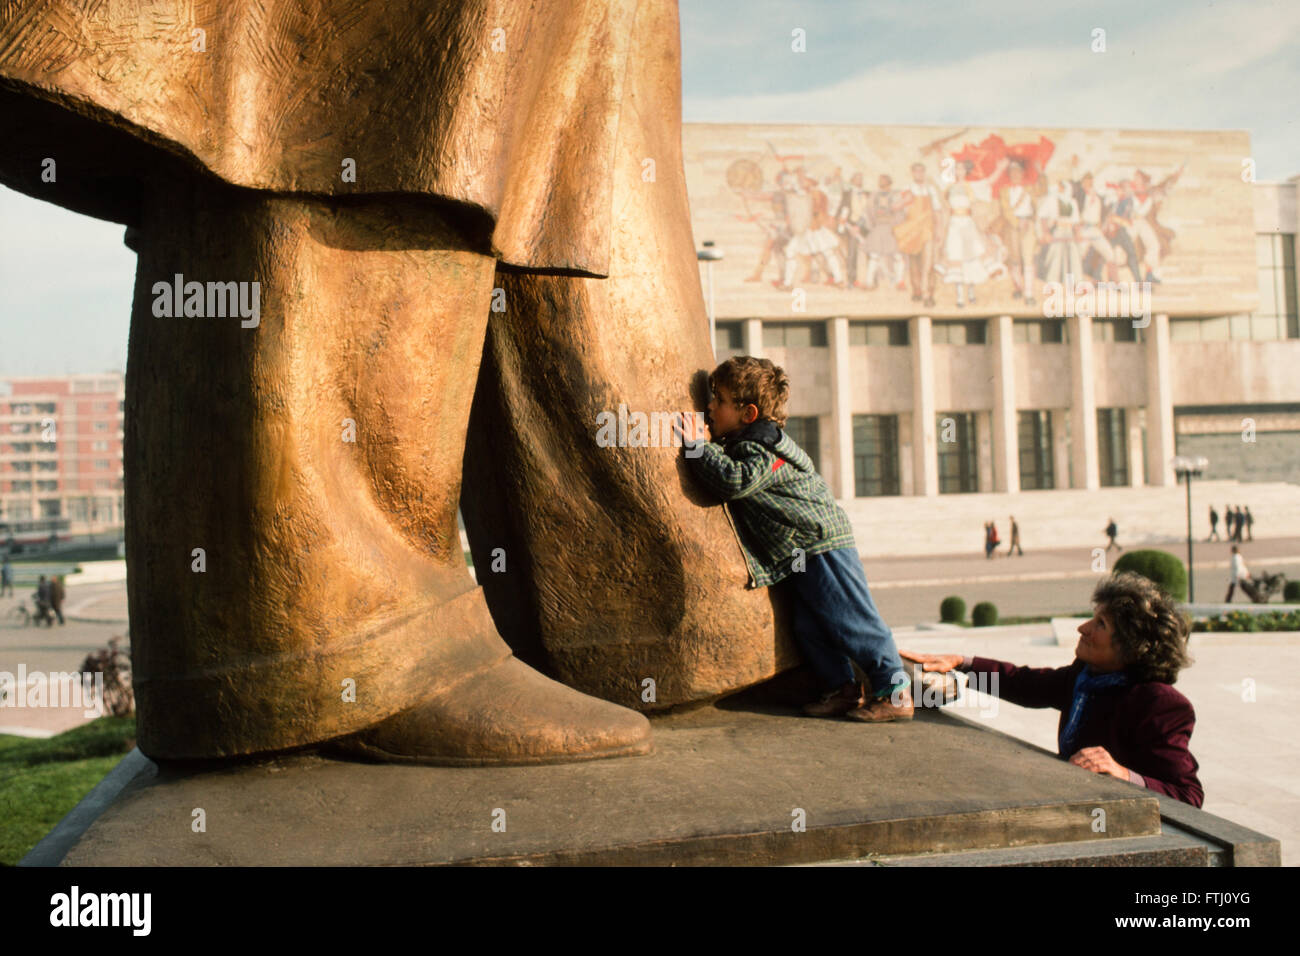 Jeune garçon, encouragé par sa mère, embrassant les pieds de la statue d'Enver Hoxha, le fondateur de l'état communiste, Tirana, 1990 Banque D'Images